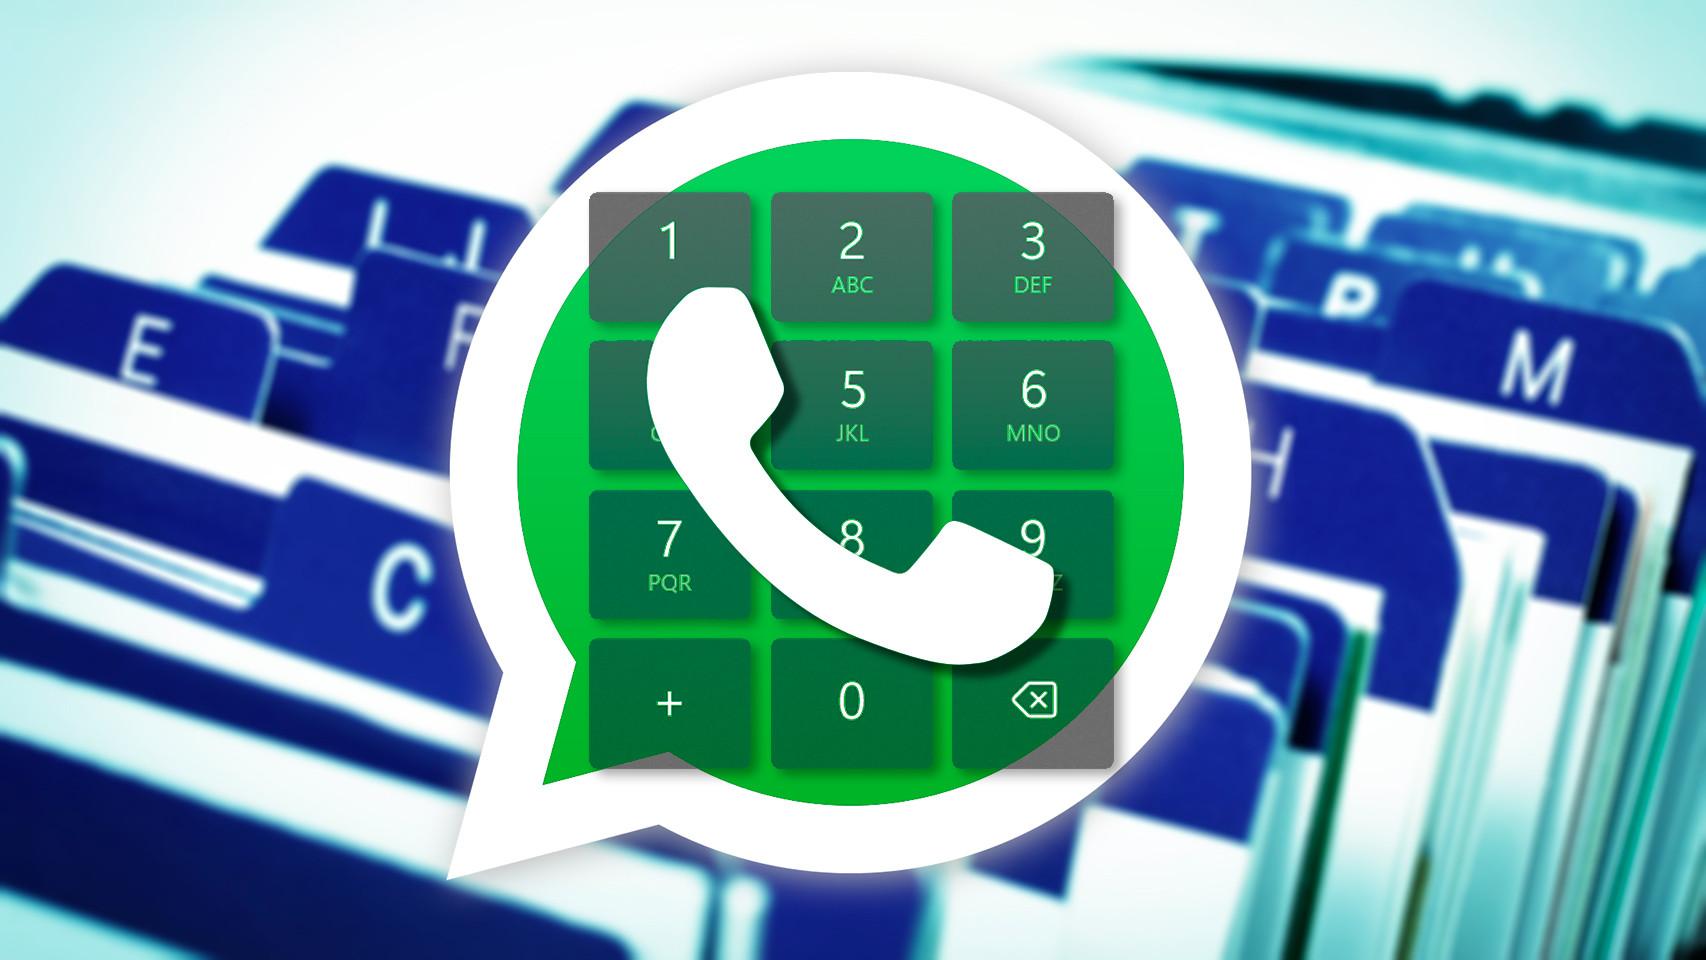 WhatsApp lanza una versión con teclado numérico